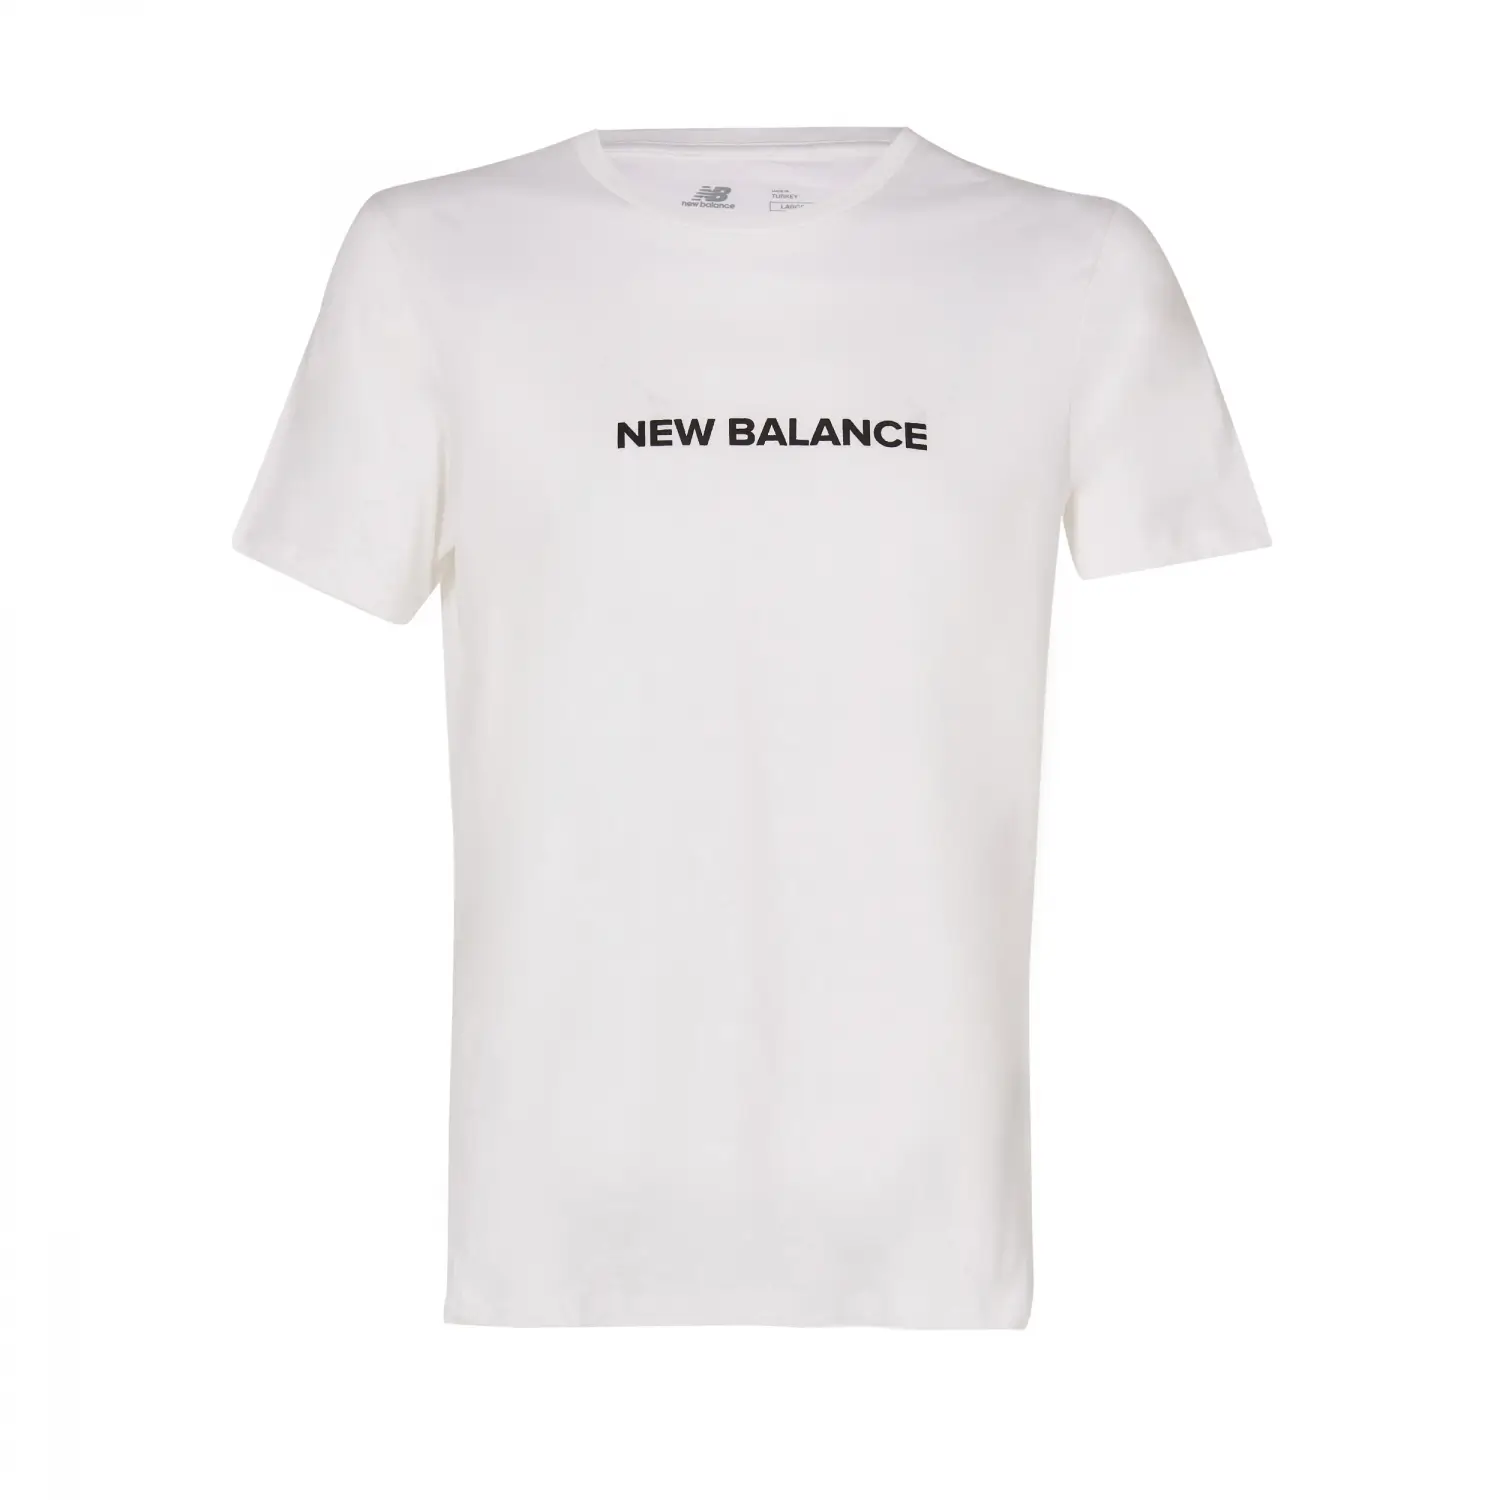 New Balance Lifestyle Beyaz Erkek Tişört - MPT1295-WT